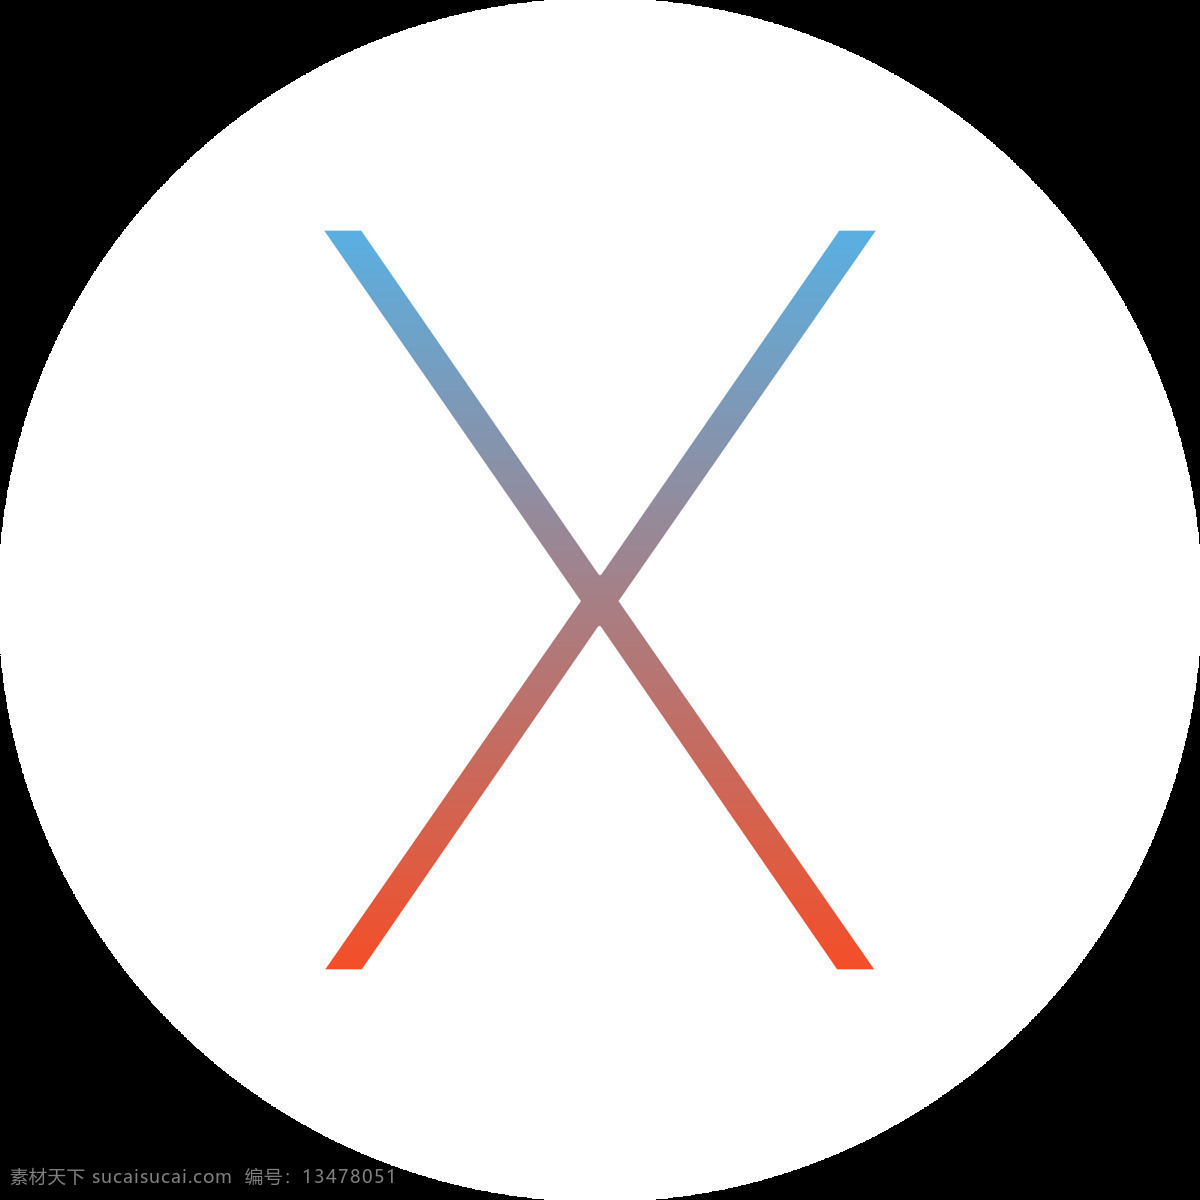 mac 圆形 图标 免 抠 透明 图 层 苹果系统图标 苹果 电脑 系统 苹果电脑系统 os x图标 x元素